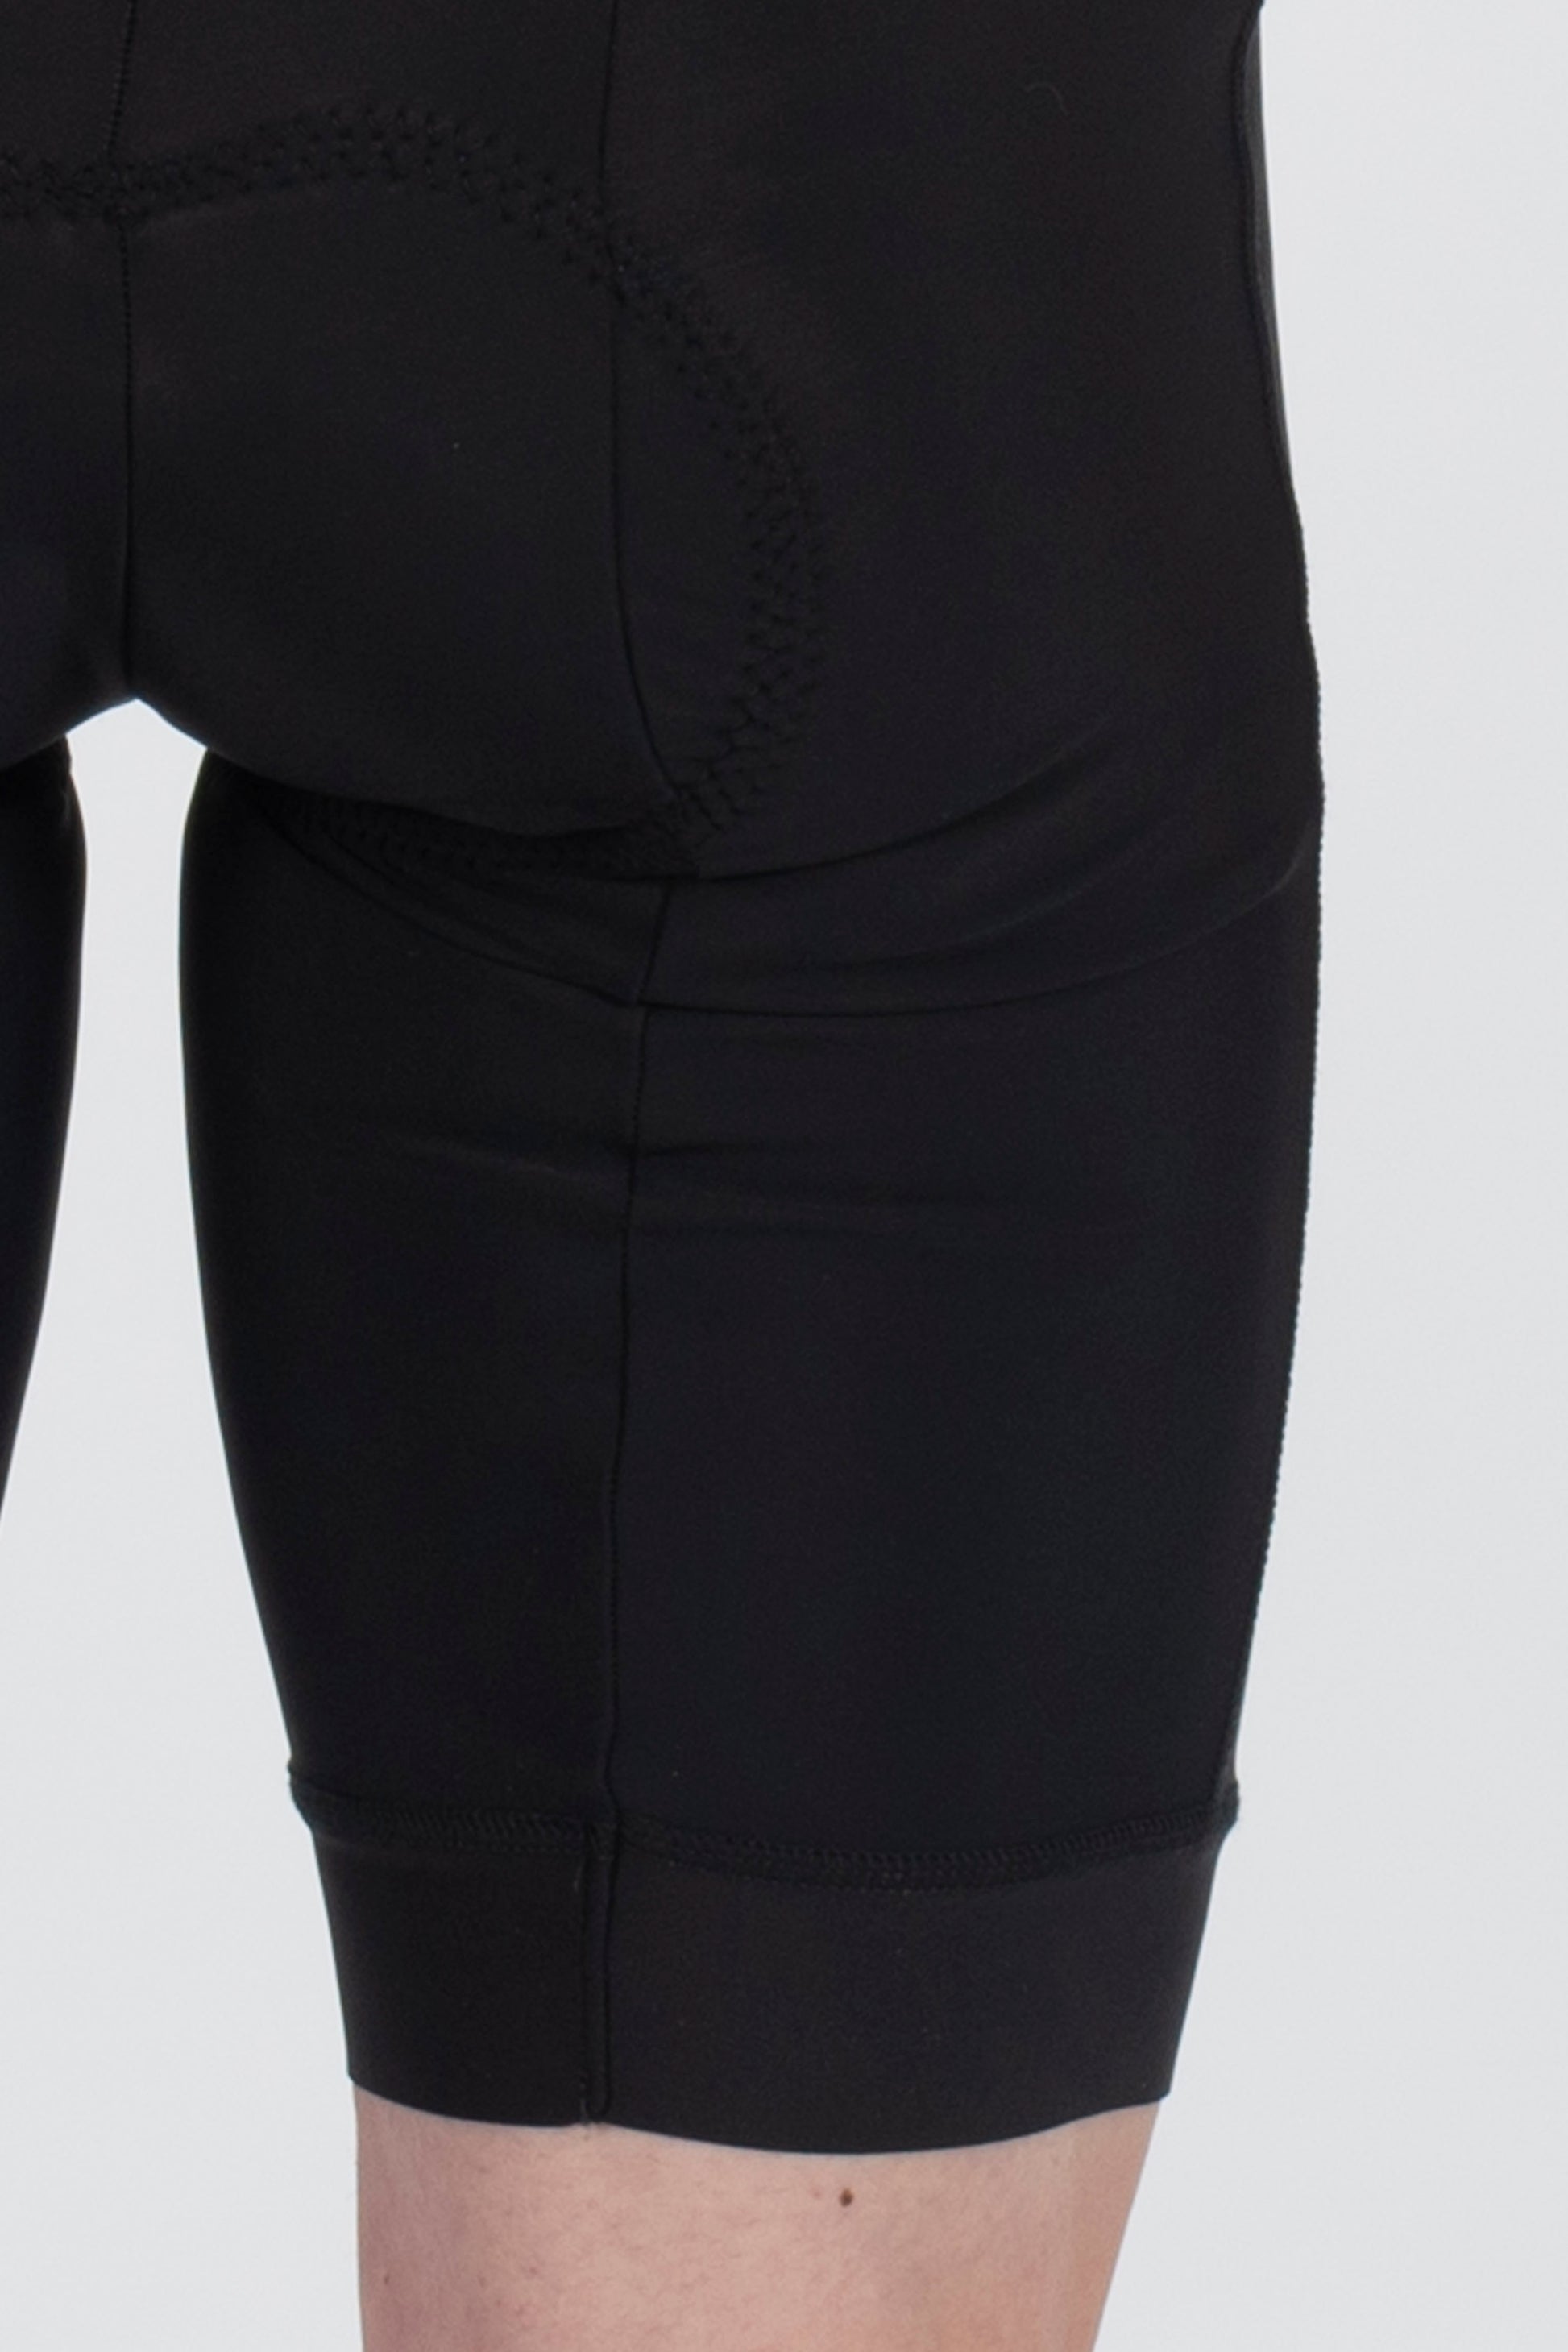 Pro Gel Shorts - Lusso Cycle Wear